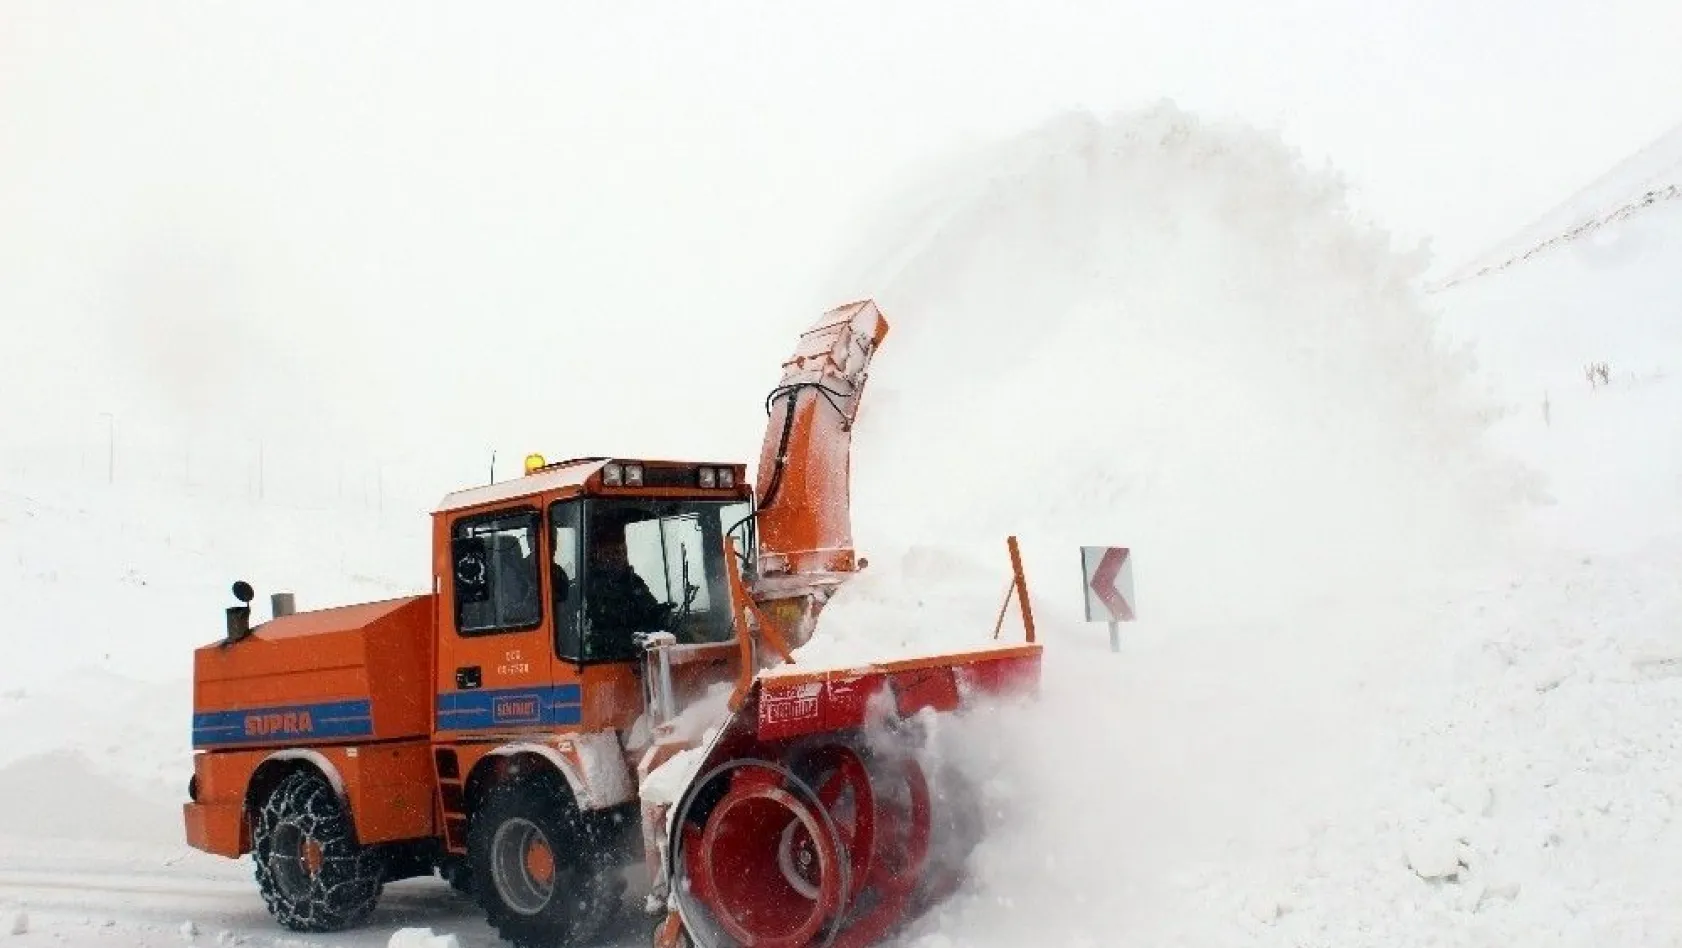 Akdeniz sahillerinde deniz havası Erzurum'da karla mücadele
